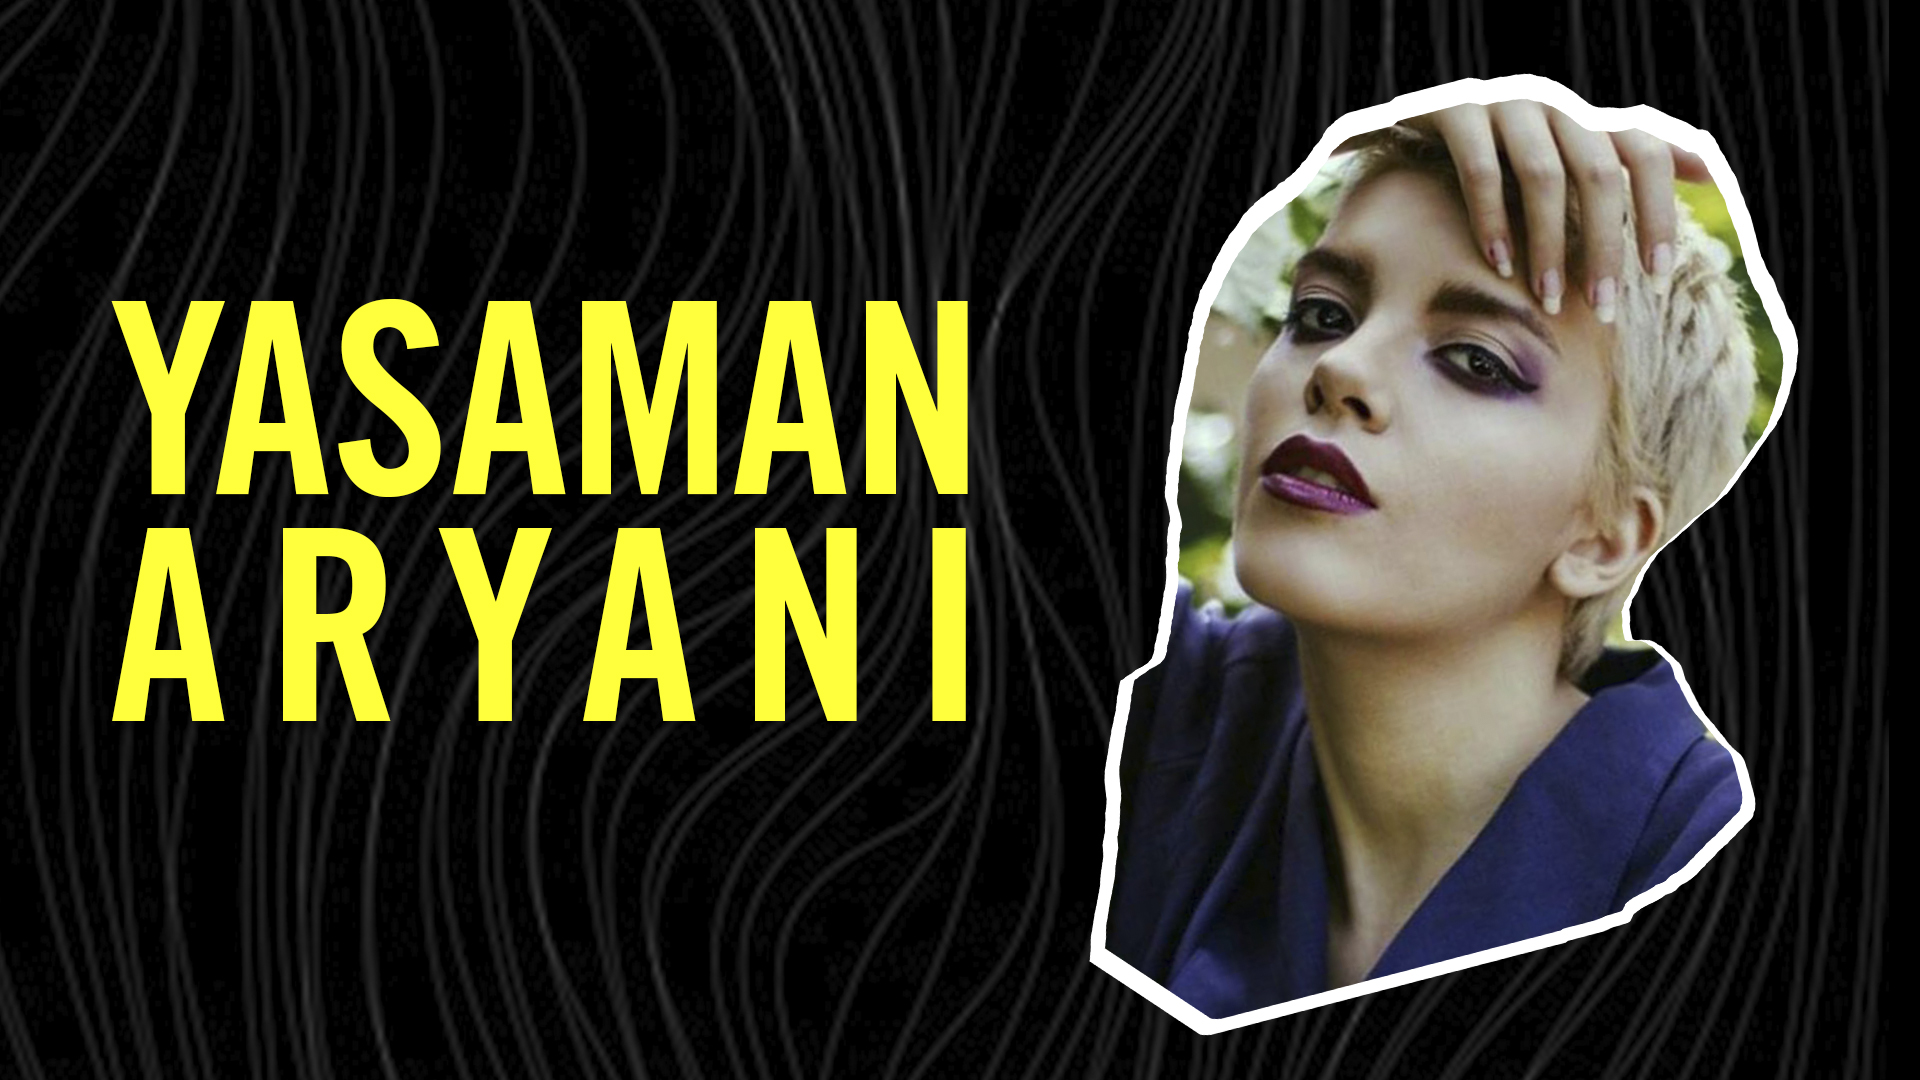 Irán: ayudá a liberar a Yasaman de prisión